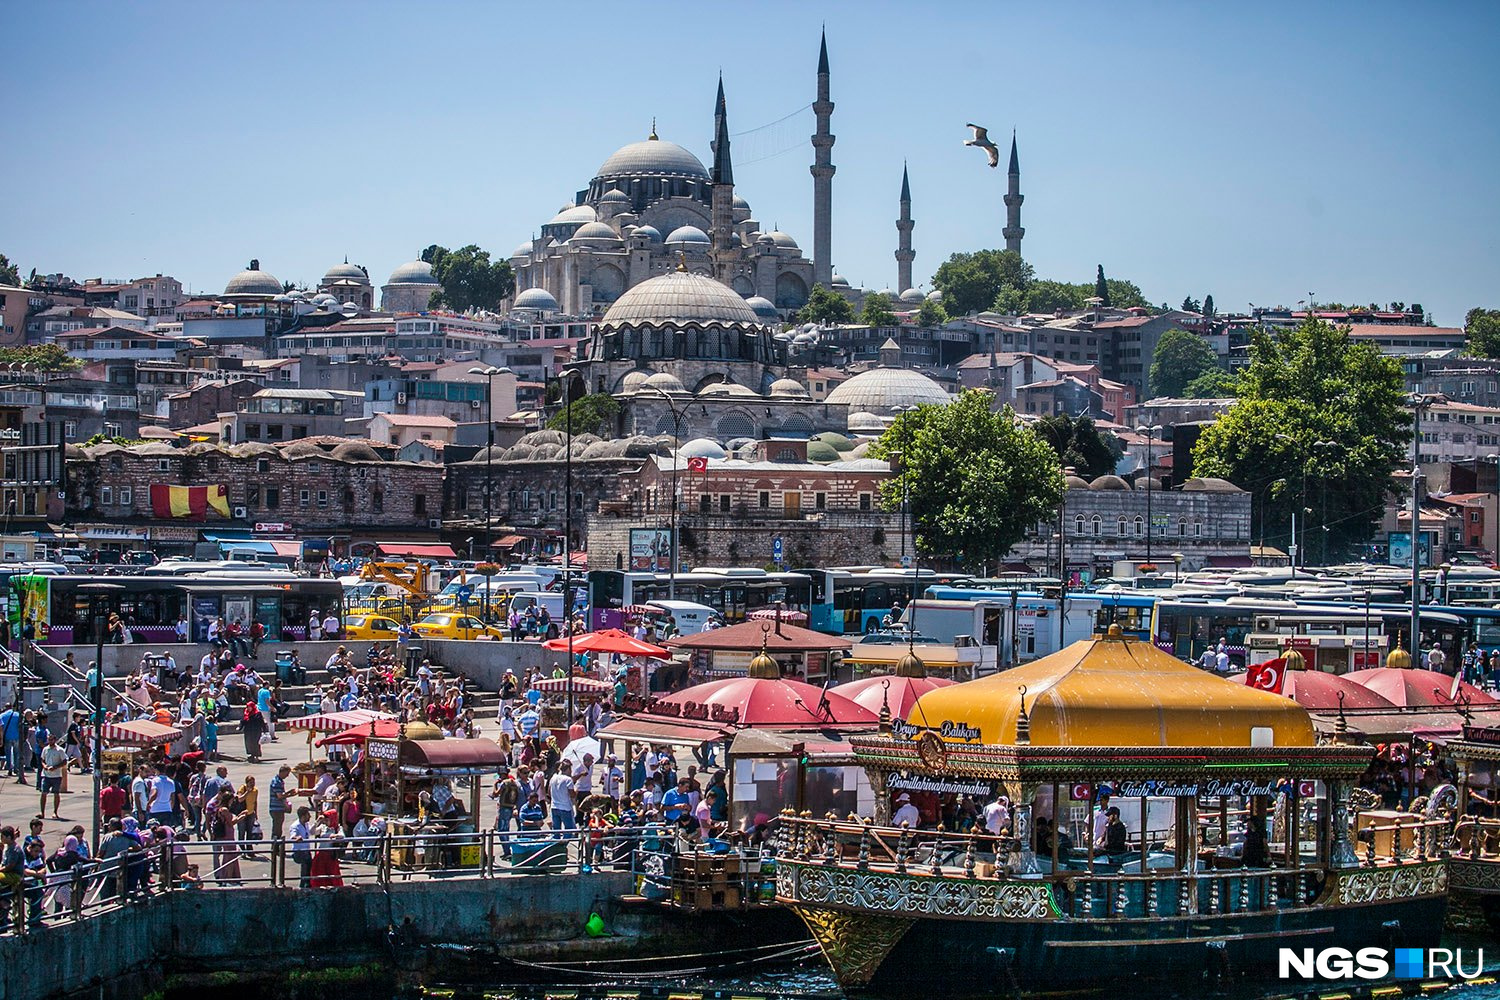 Турция в межсезонье — это отличная возможность посмотреть достопримечательности без толпы туристов